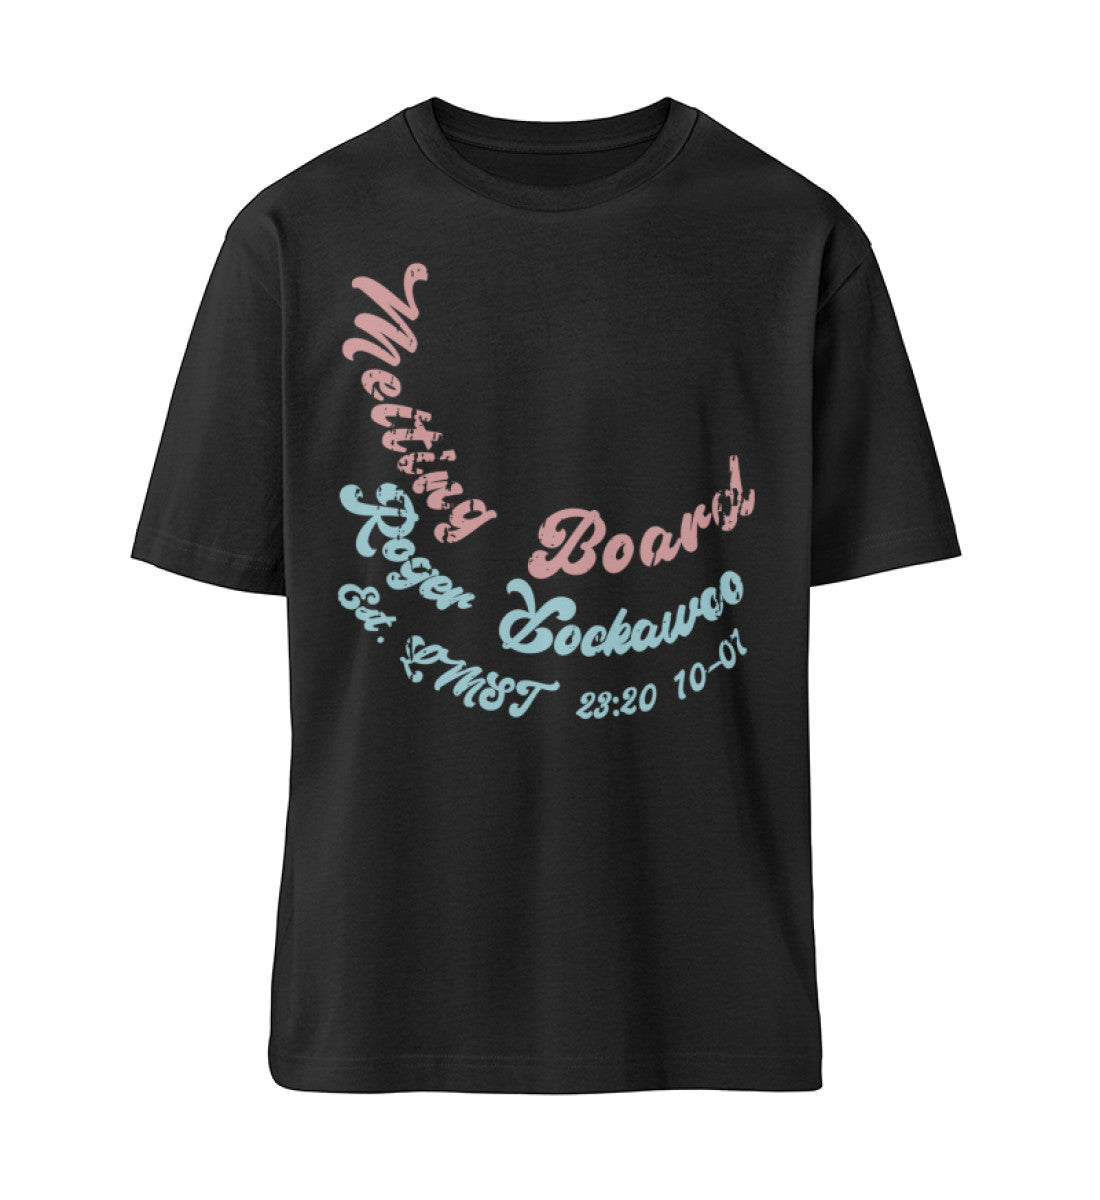 Schwarzes T-Shirt Unisex Relaxed Fit für Frauen und Männer bedruckt mit dem Design der Roger Rockawoo Kollektion Melting Skateboard